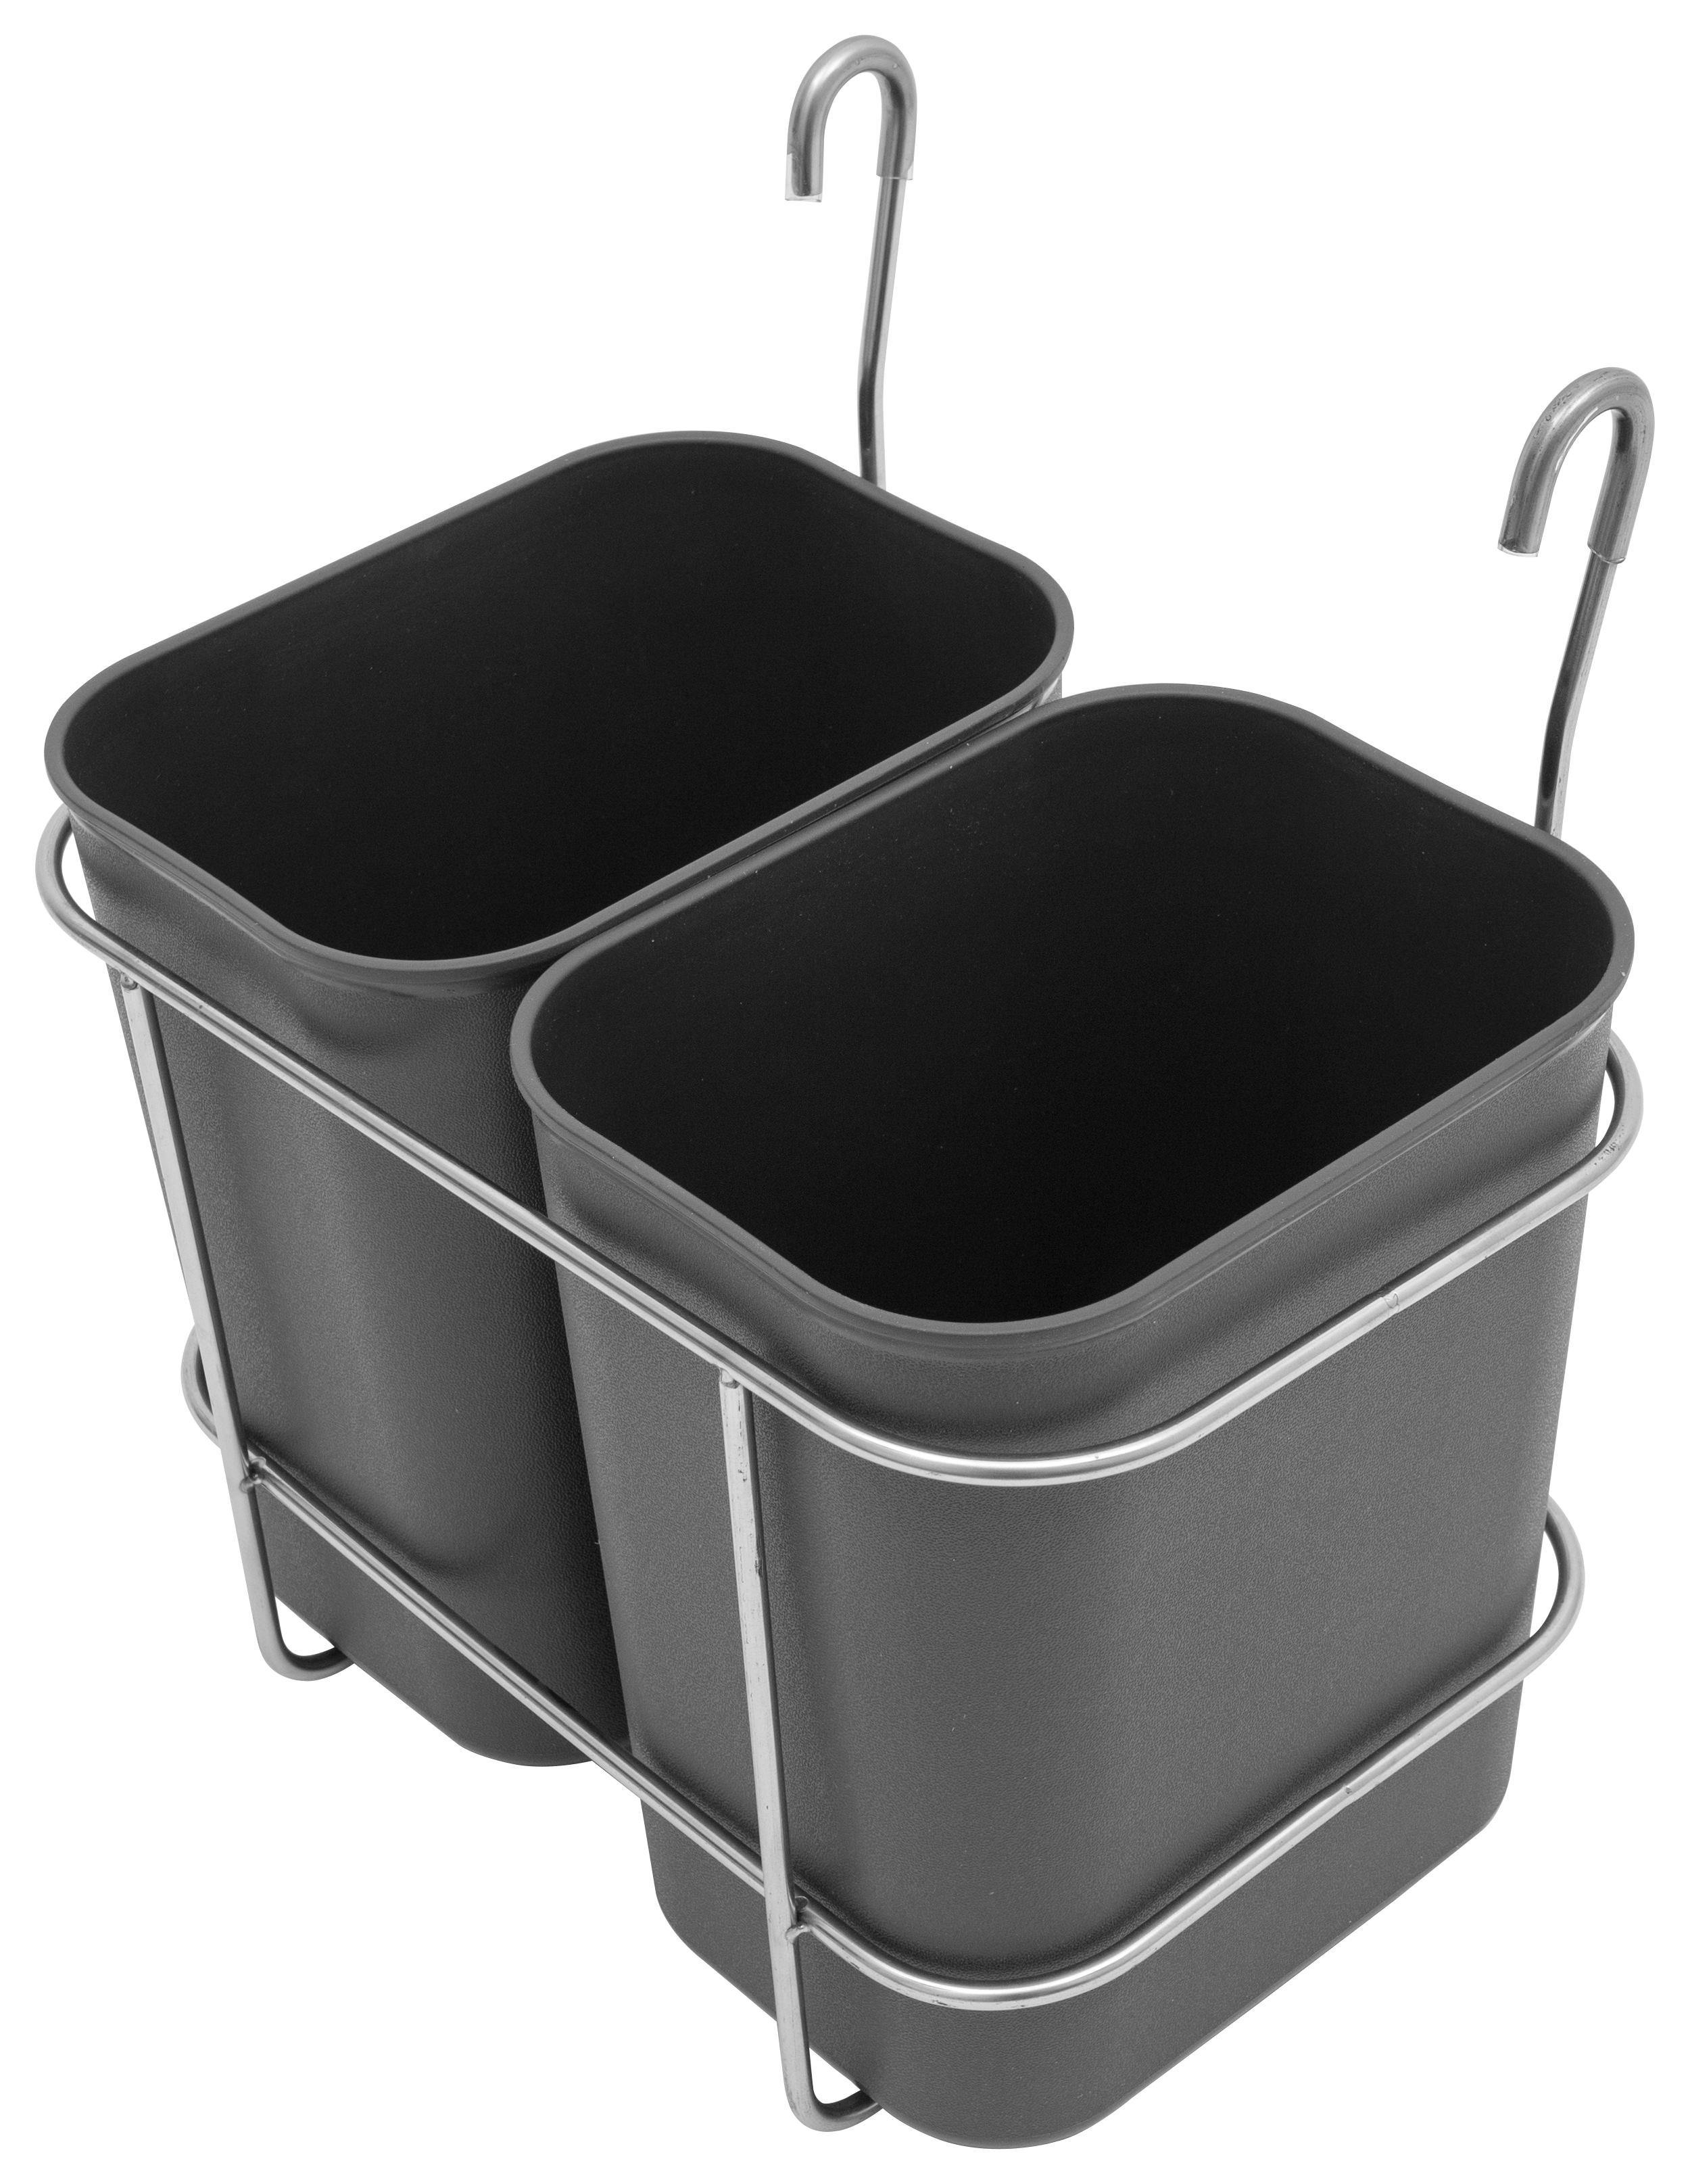 Saro Abfallsammelbehälter für Servierwagen Modell AB 2 